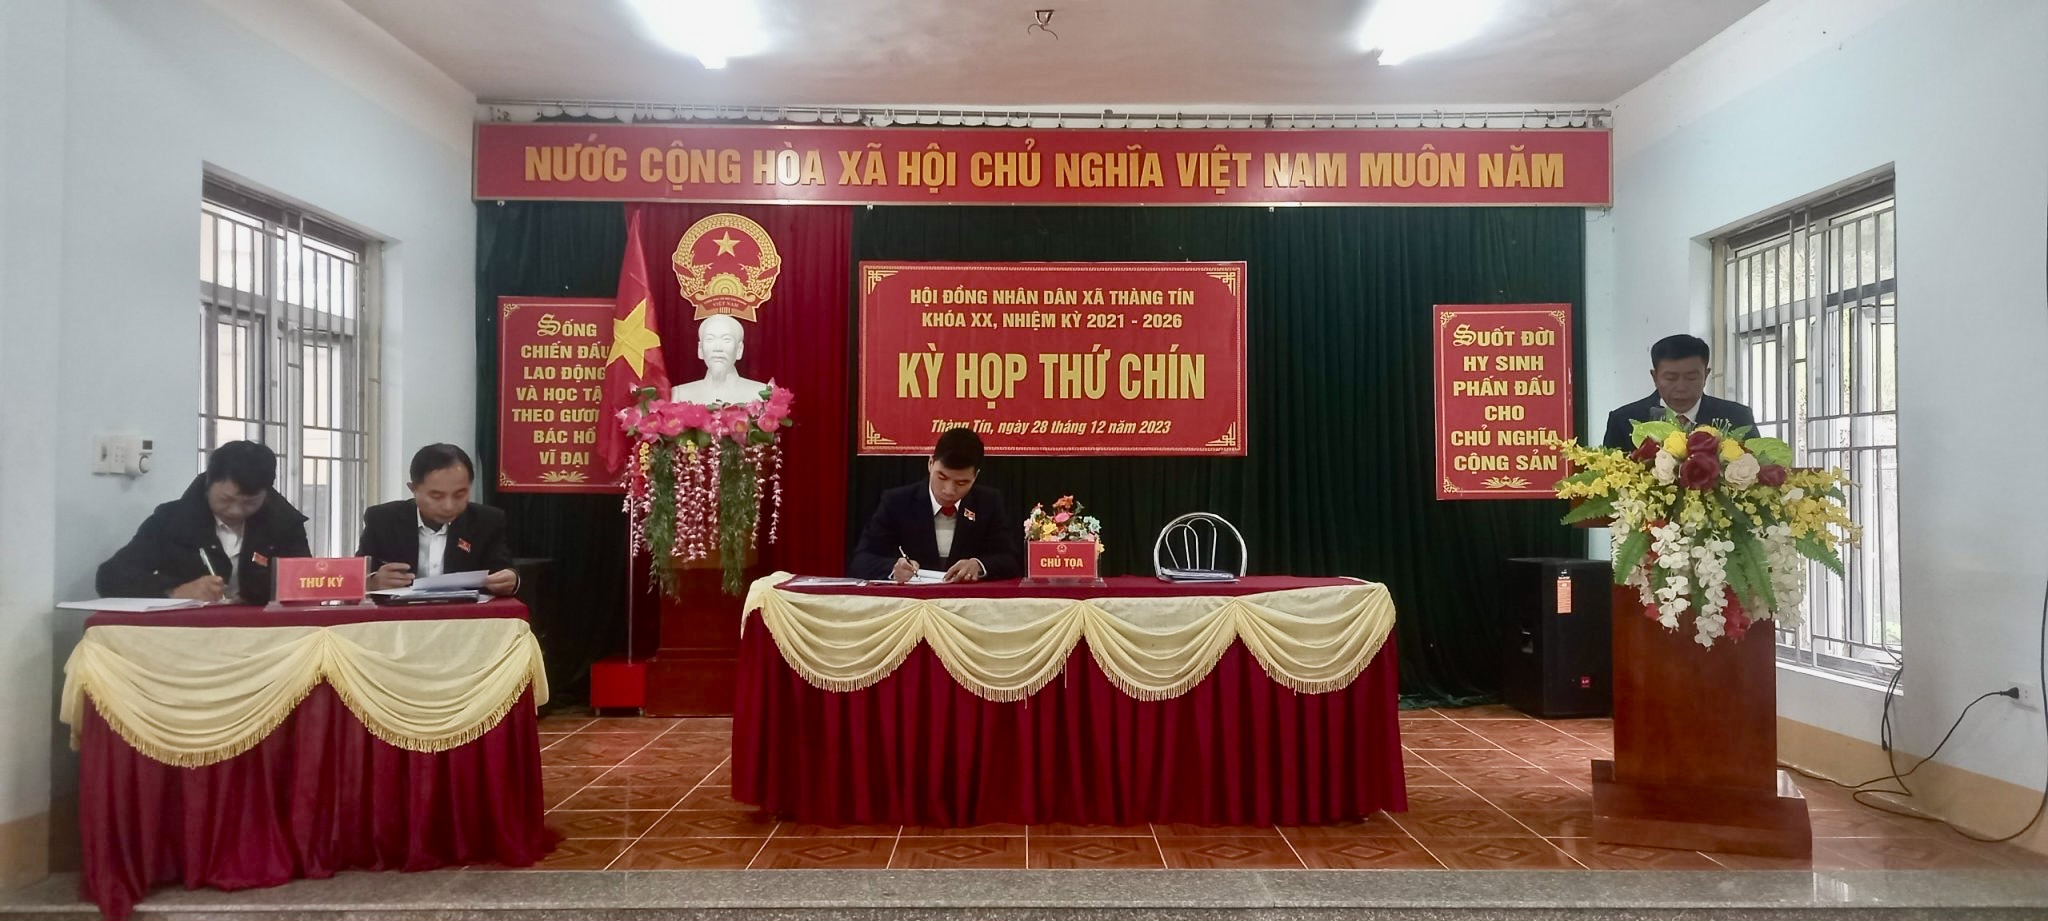 HĐND xã Thàng Tín tổ chức kỳ họp thứ Chín khóa XX, nhiệm kỳ 2021 - 2026